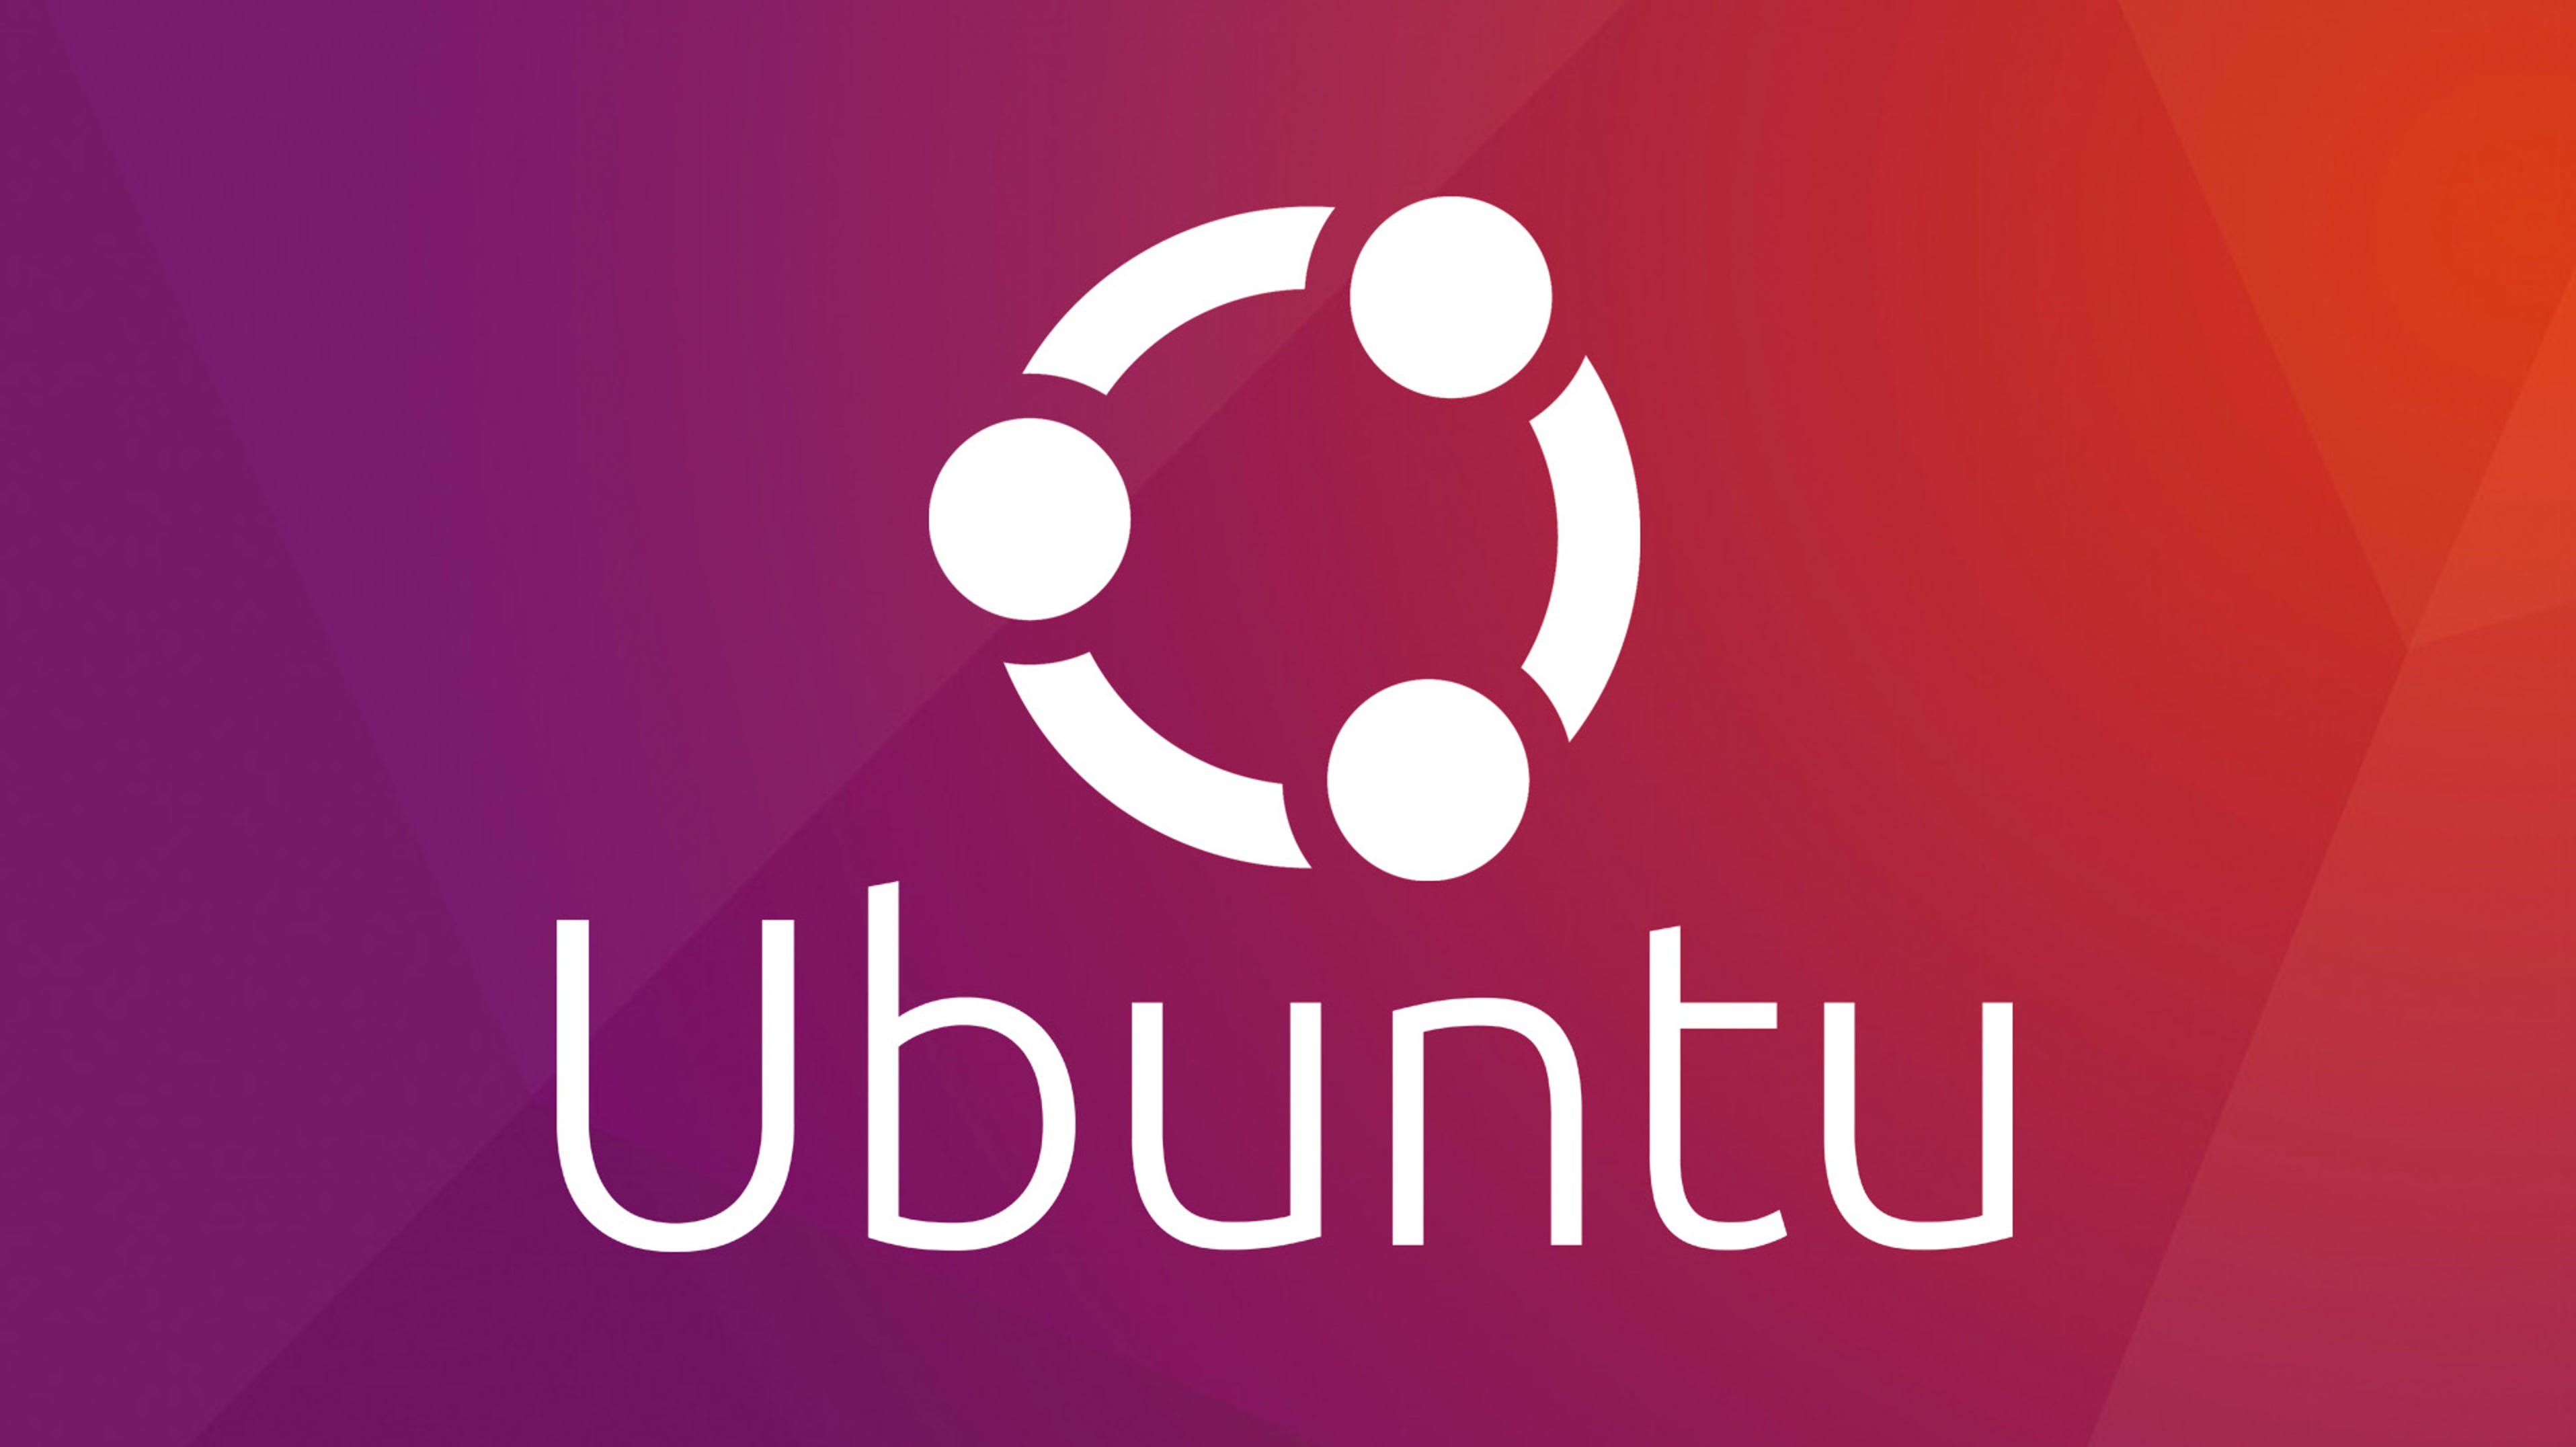 Le support d'Ubuntu 18.04 est sur le point de se terminer, mais pas pour tout le monde